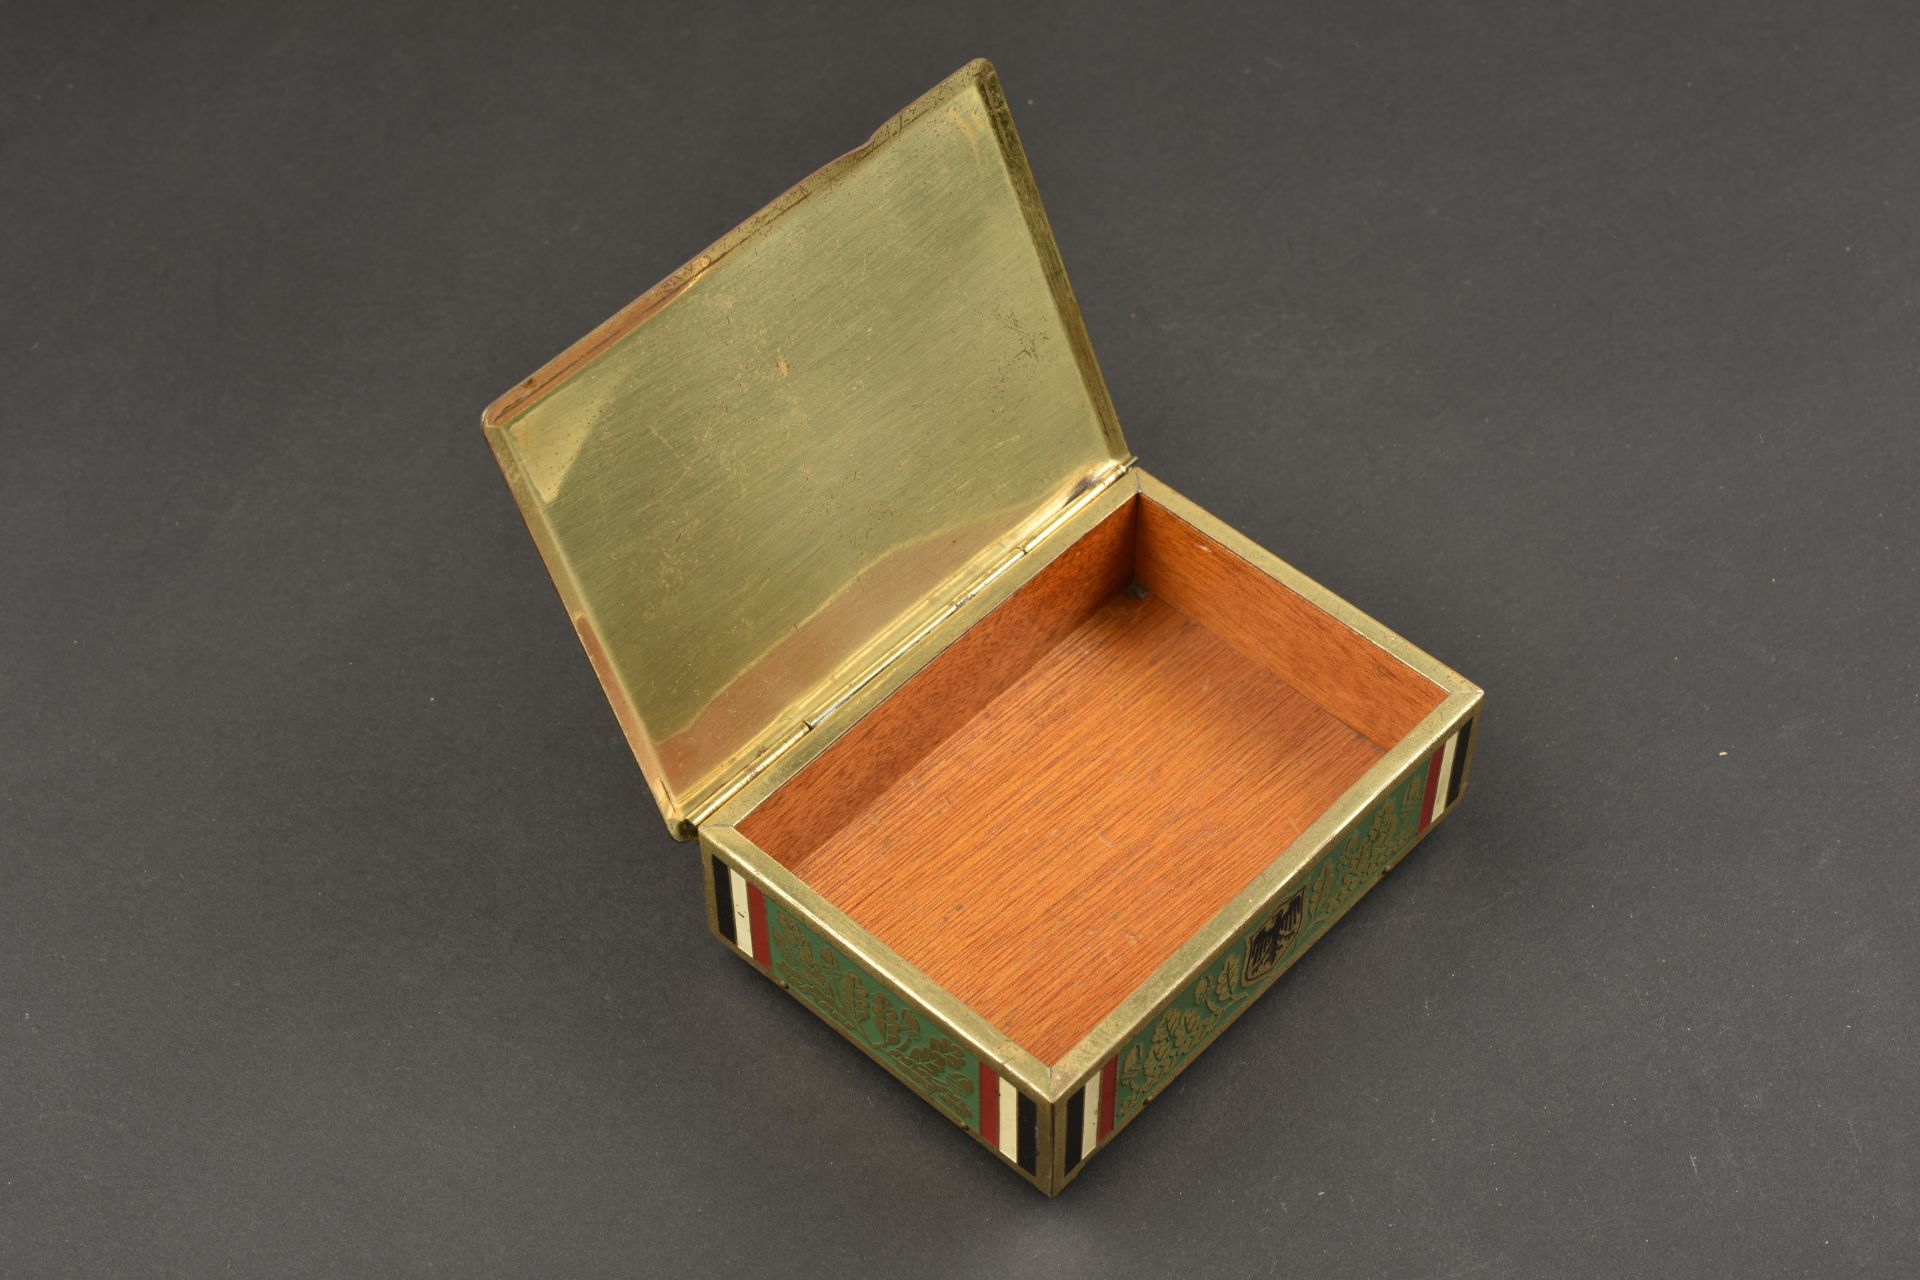 Boite commemorative. Commemorative box. - Image 2 of 6